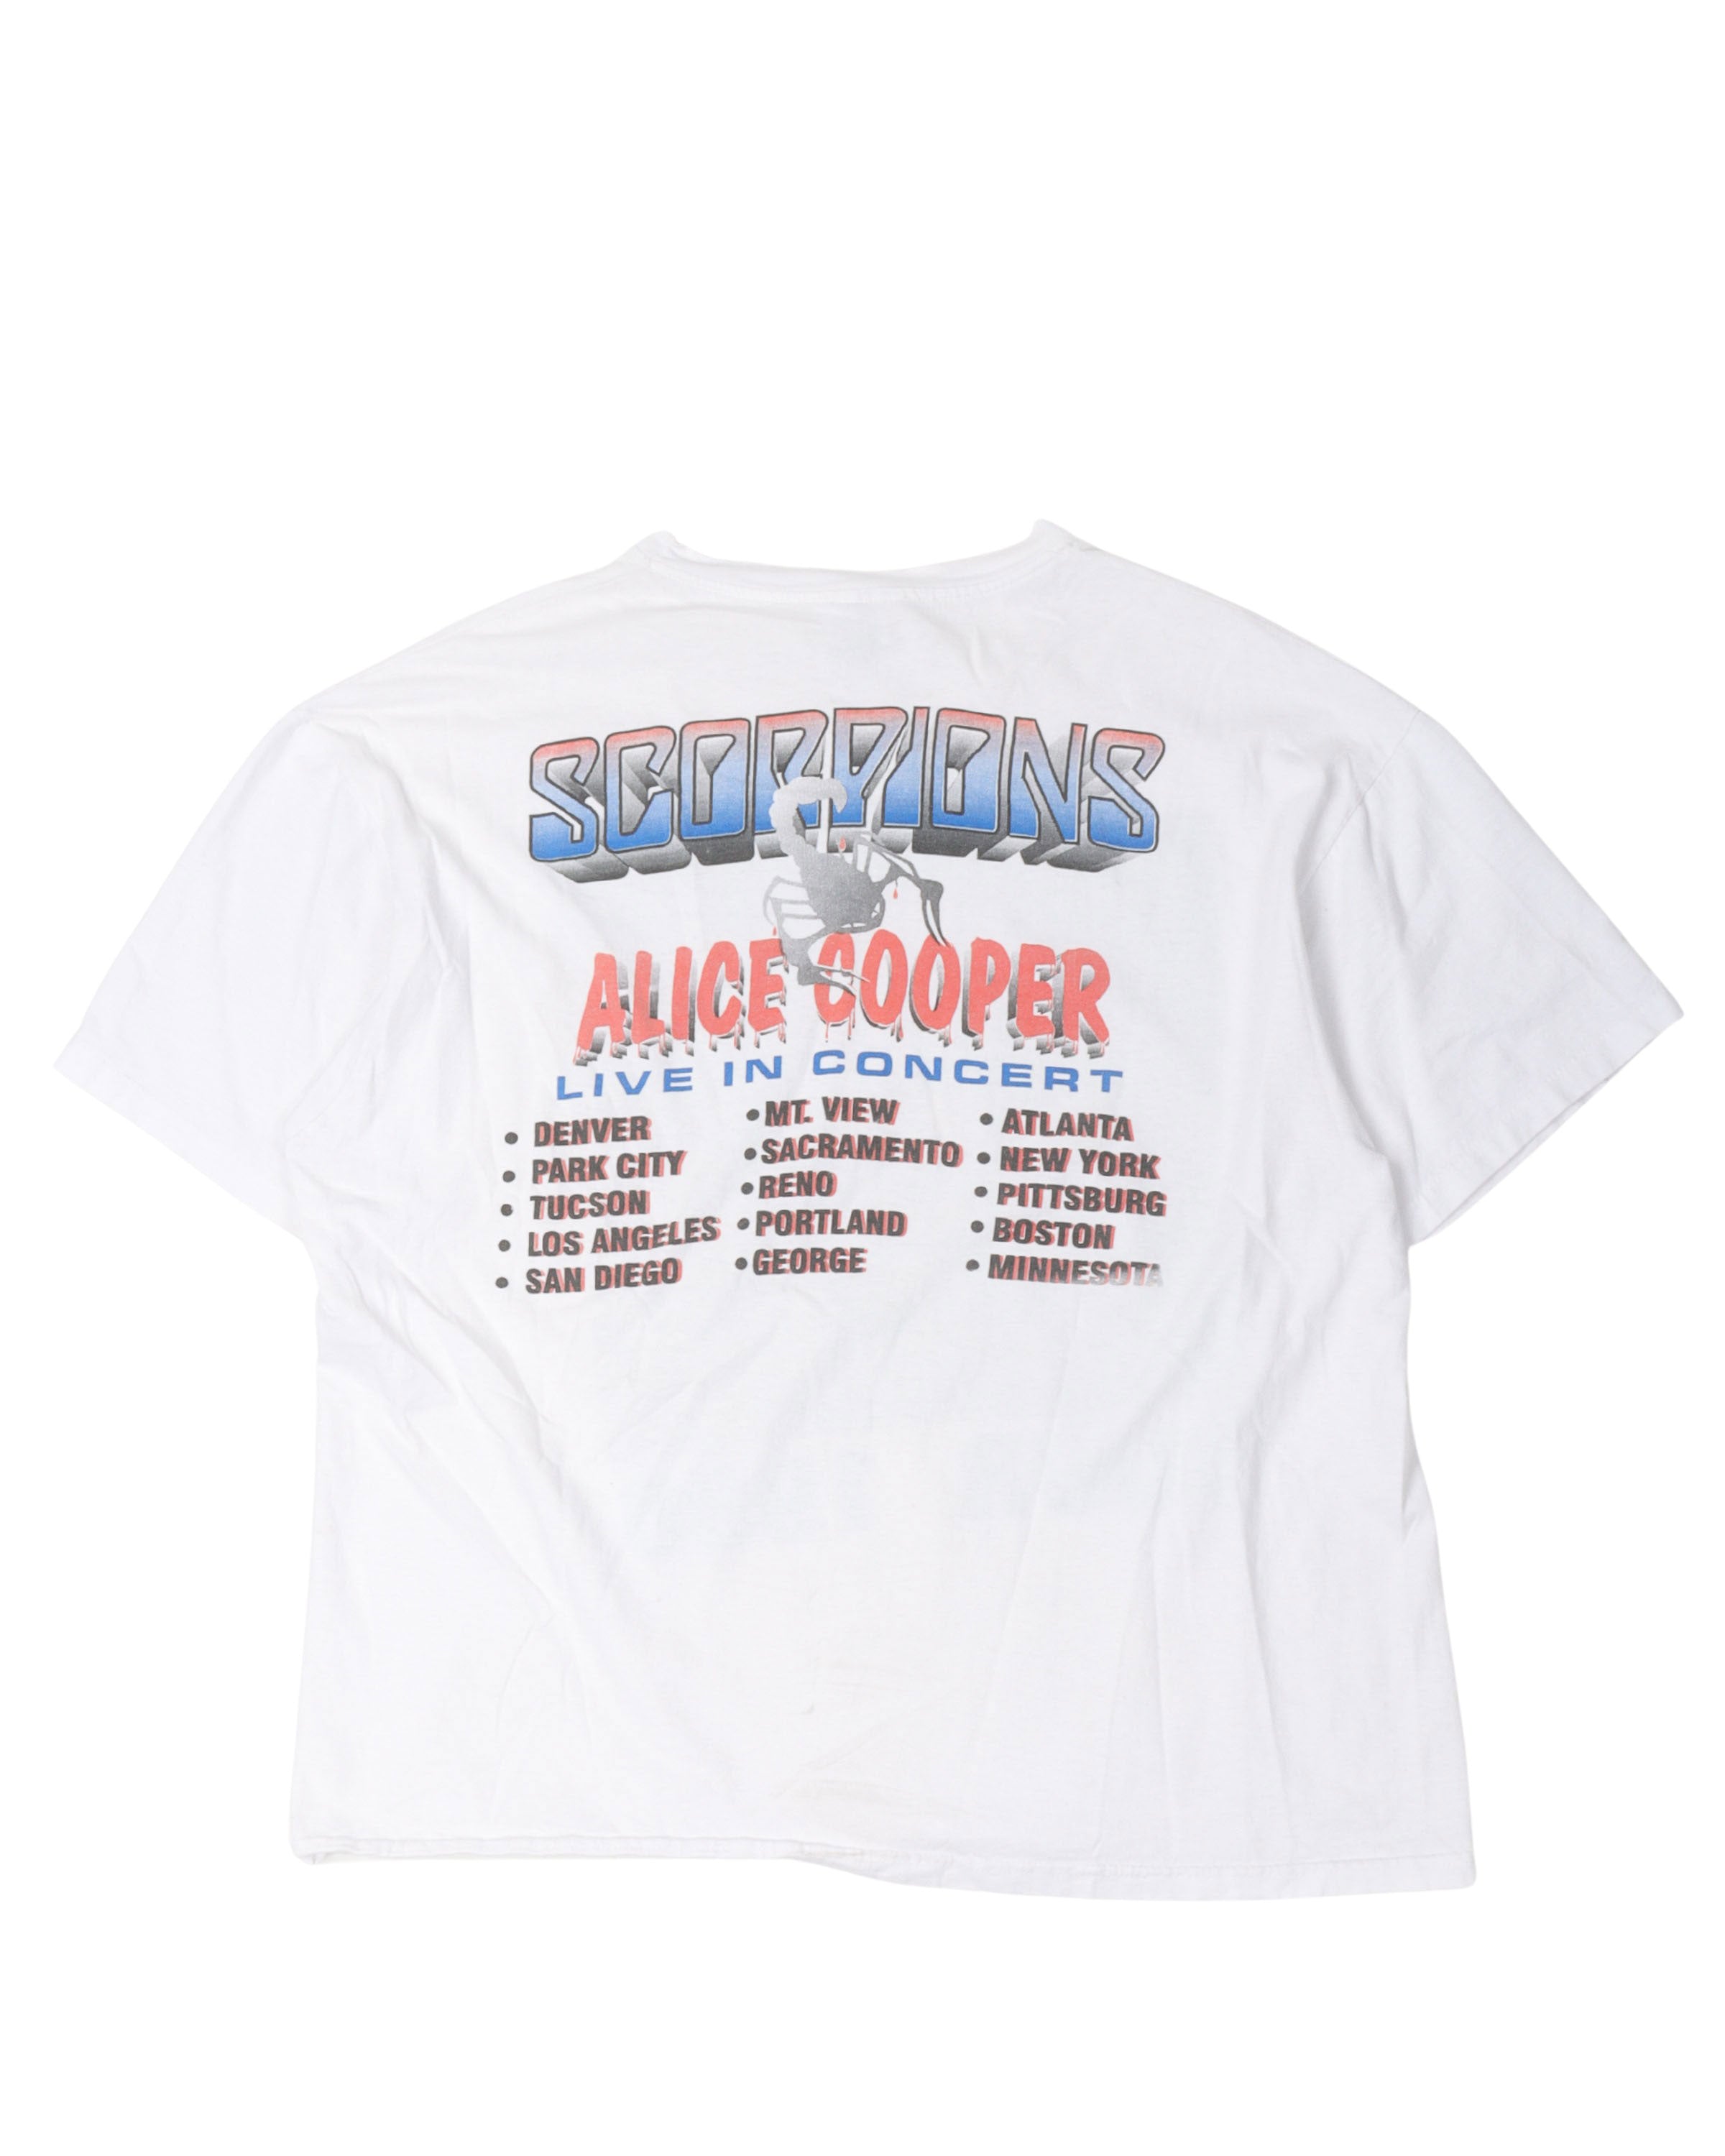 Scorpions & Alice Cooper 1996 Tour T-Shirt